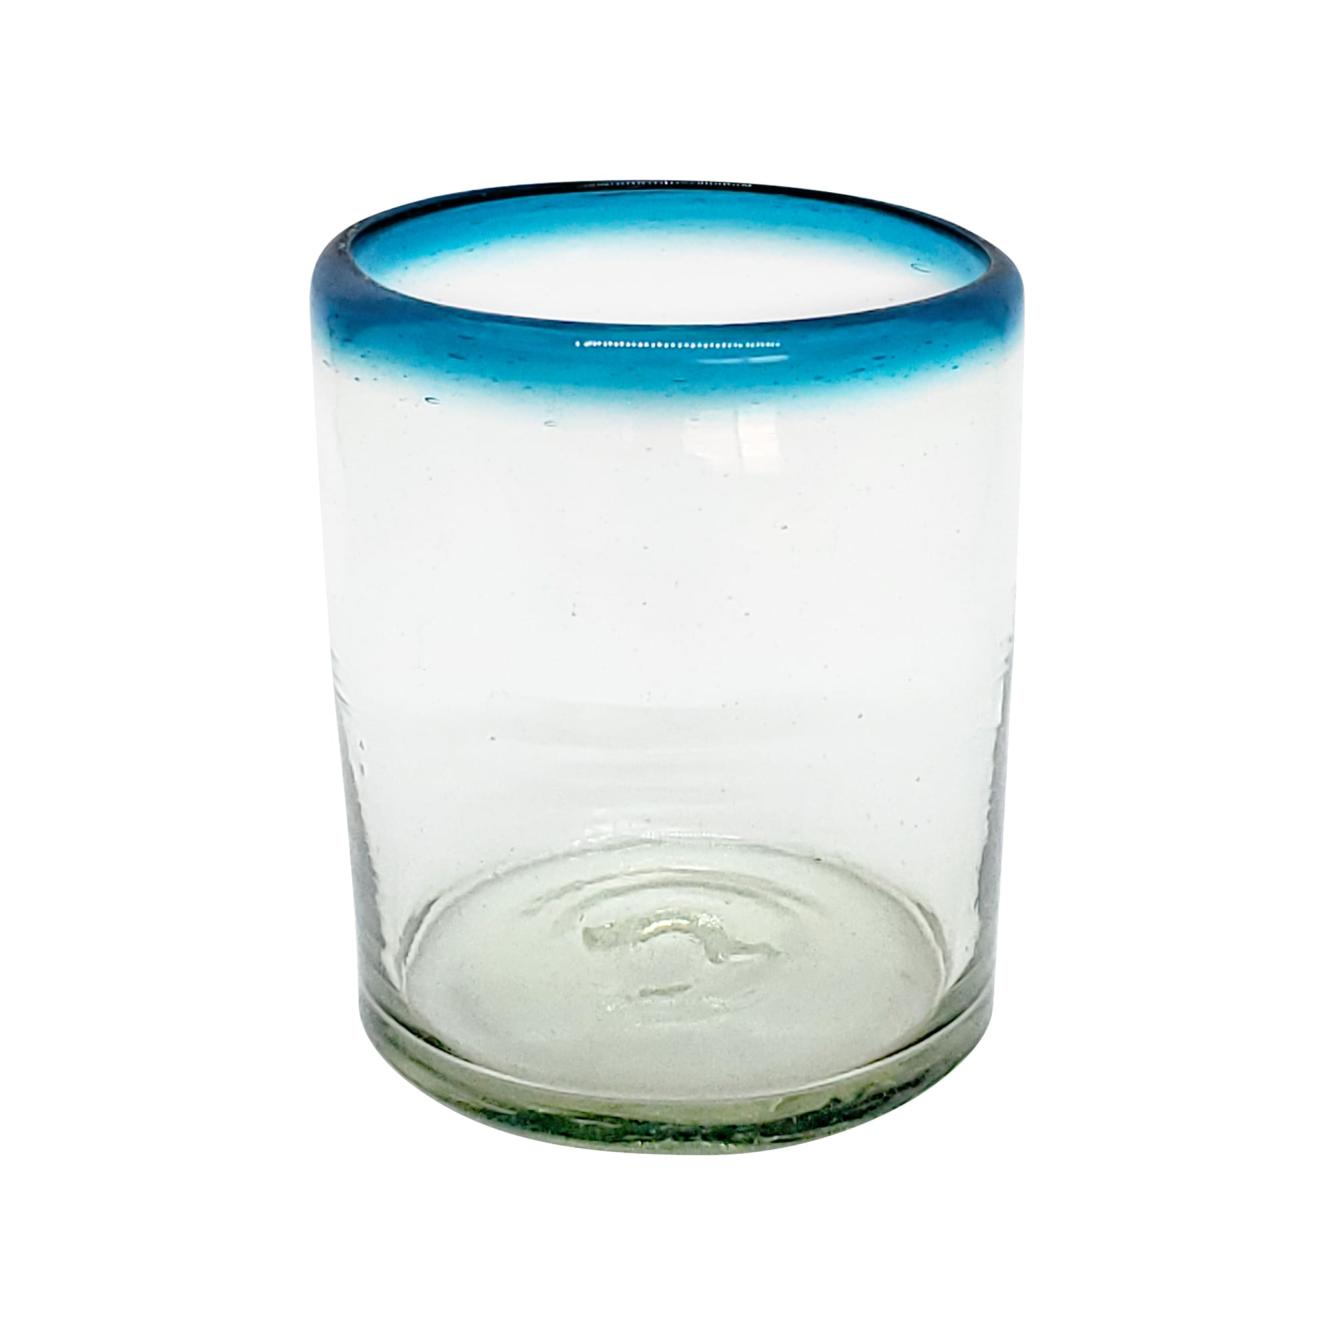 Ofertas / Juego de 6 vasos chicos con borde azul aqua / Éstos vasos chicos son un gran complemento para su juego de jarra y vasos grandes.